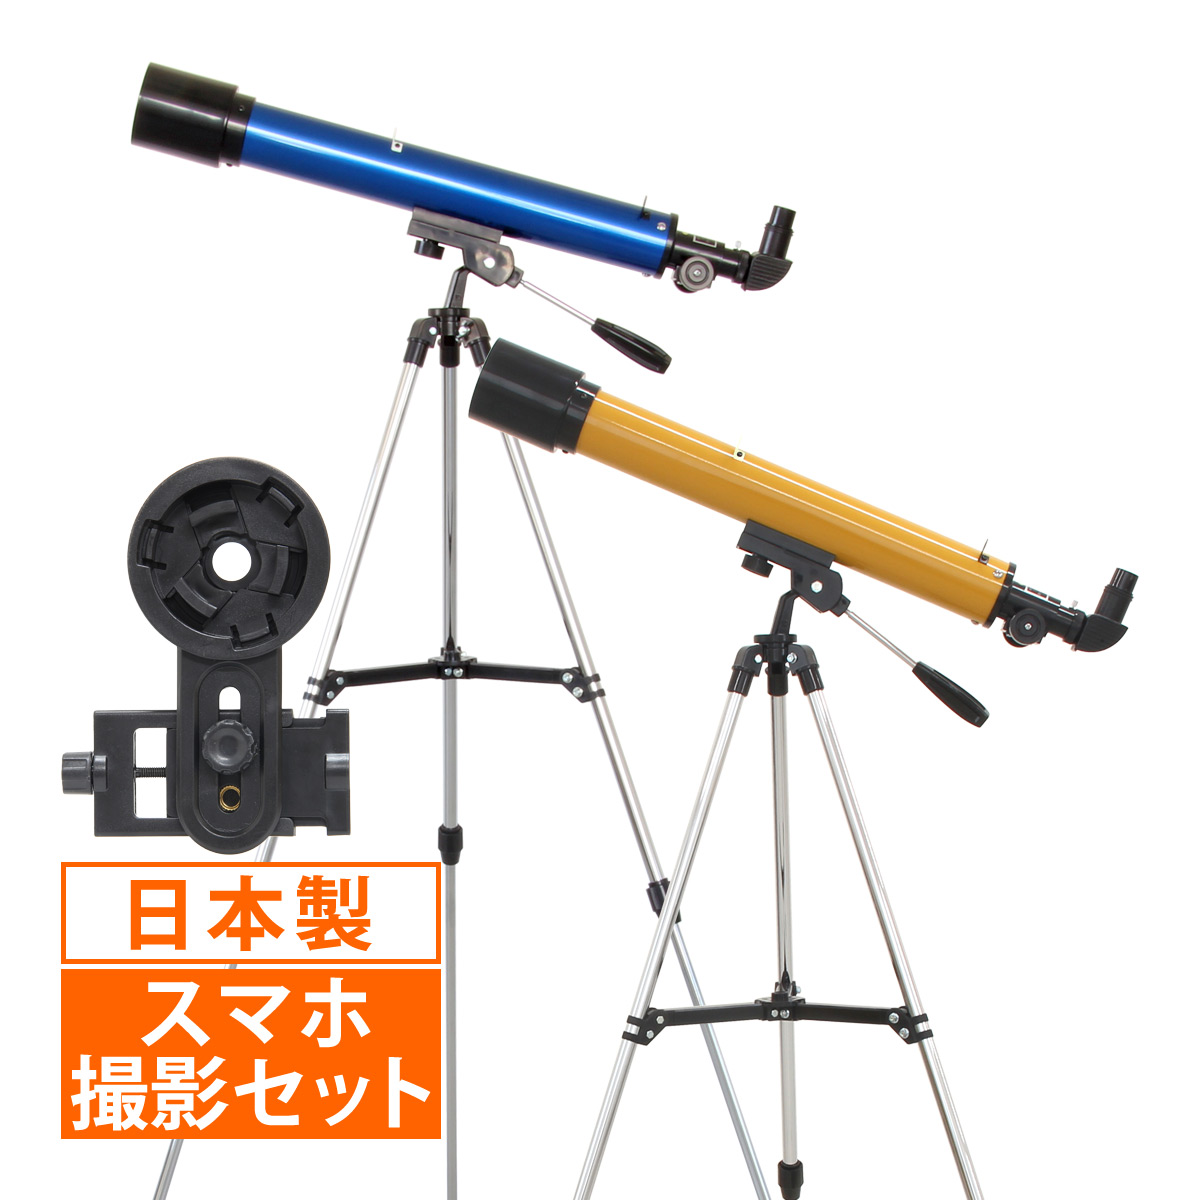 天体望遠鏡 スマホ 撮影 初心者 レグルス60 日本製 天体望遠鏡セット 望遠鏡 天体 子供用 小学生 入門 天体ガイドブック付き 口径60mm カメラアダプター 屈折式 おすすめ 入学祝い